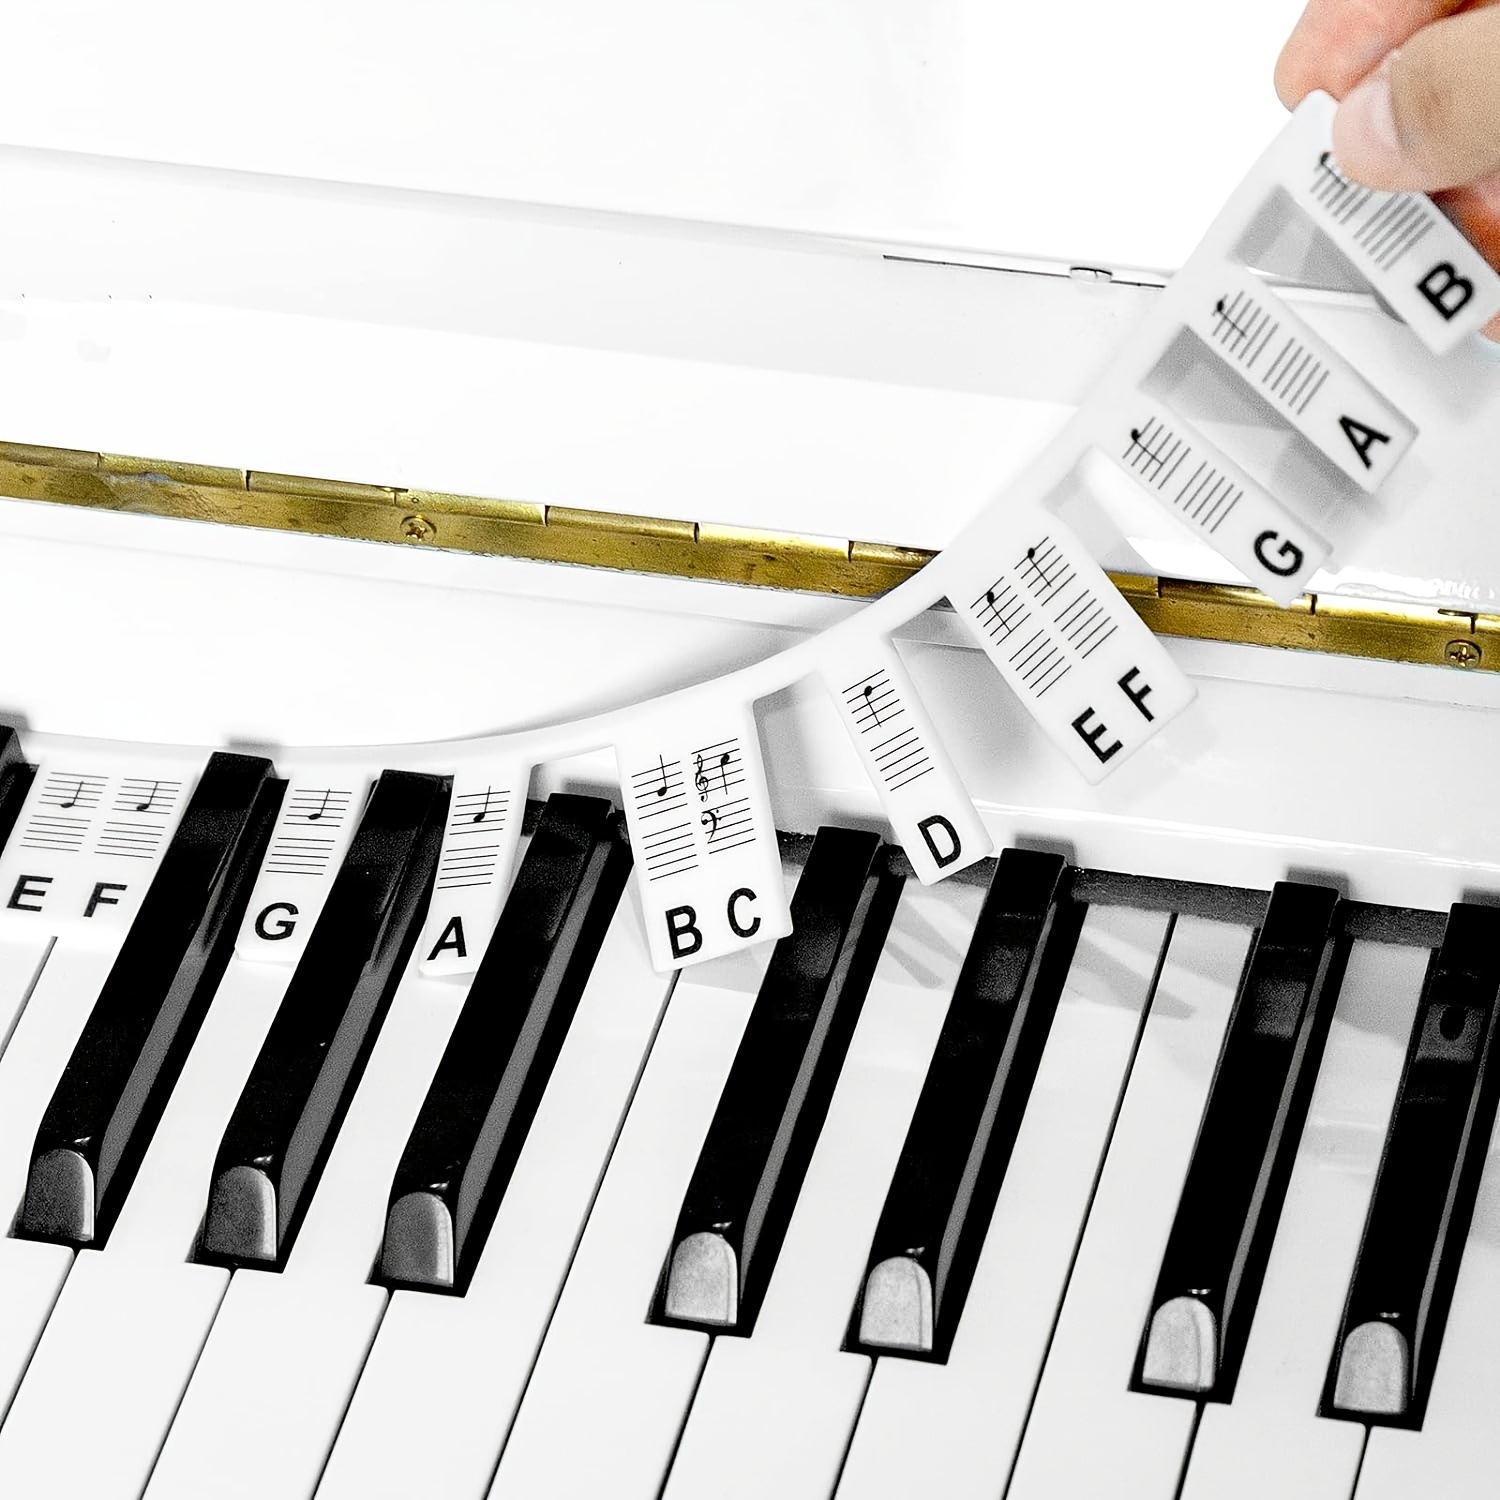 Étiquettes de clavier de Piano amovibles, 61 touches, 88 touches